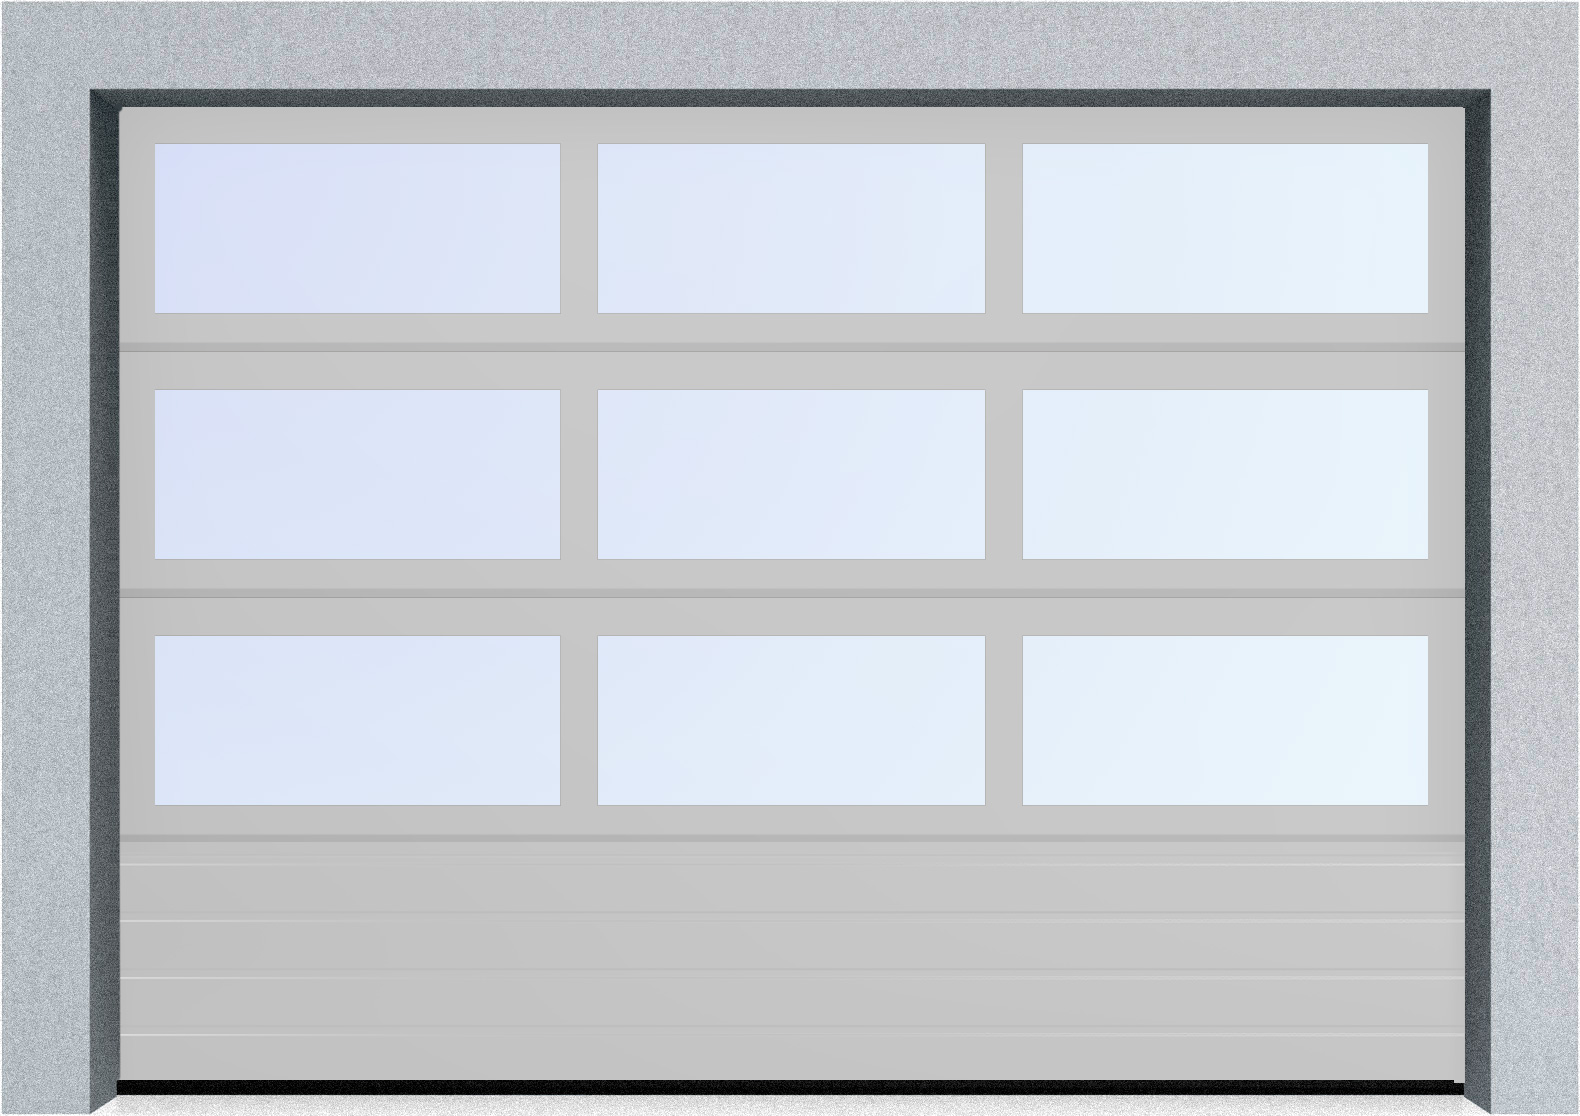  Секционные панорамные ворота серии AluTrend с комбинированным типом полотна (АЛПС) 2500х2375 нижняя панель S-гофр, Микроволна стандартные цвета, фото 16 